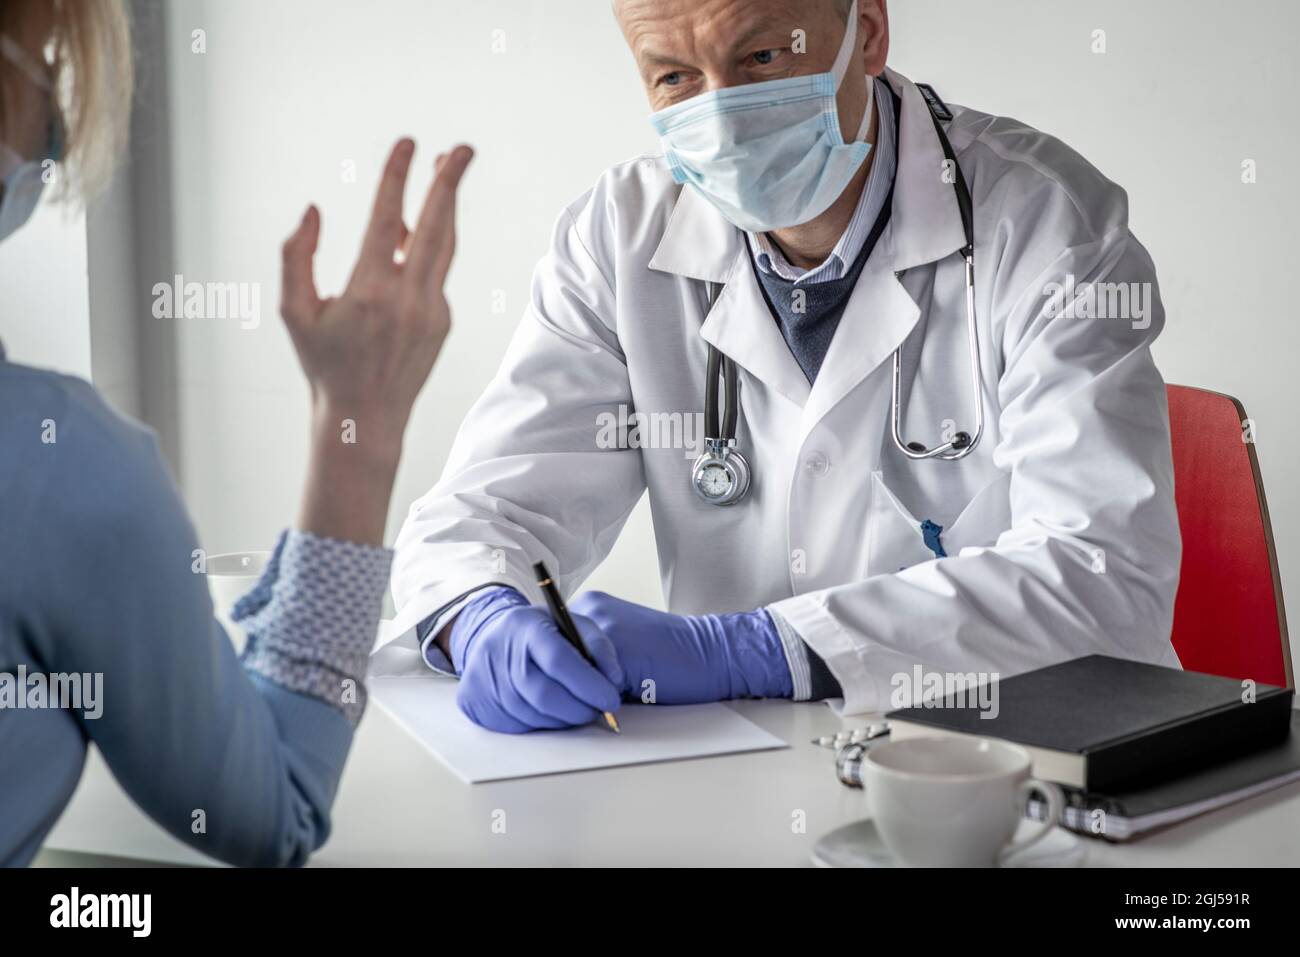 Covid-19, Prävention von Viren, medizinisches Personal und Impfkonzept. Seriös zuversichtlich männlichen Arzt in weißem Mantel und medizinische Maske, trägt eine Brille, Stockfoto